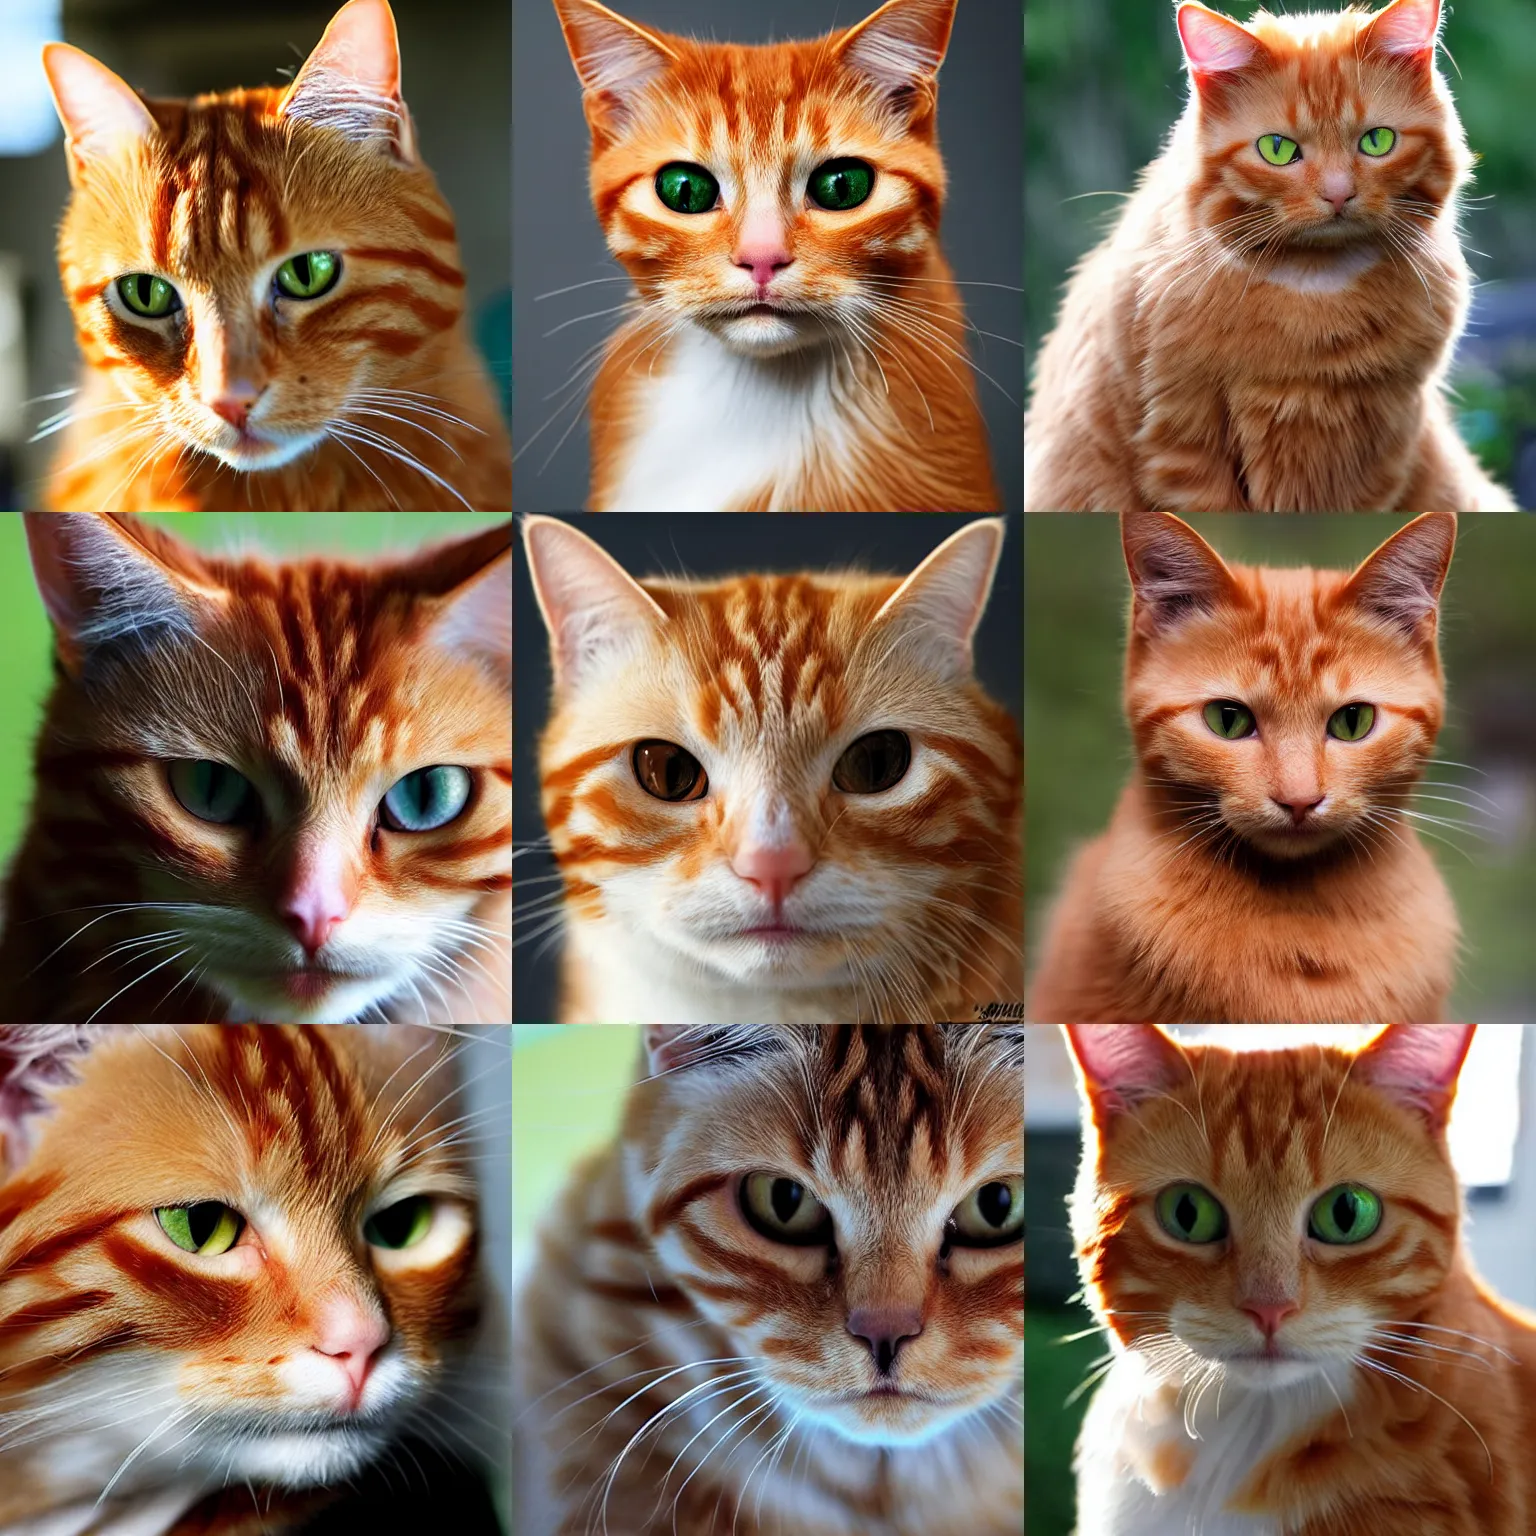 Prompt: ginger cat, smouldering directed gaze